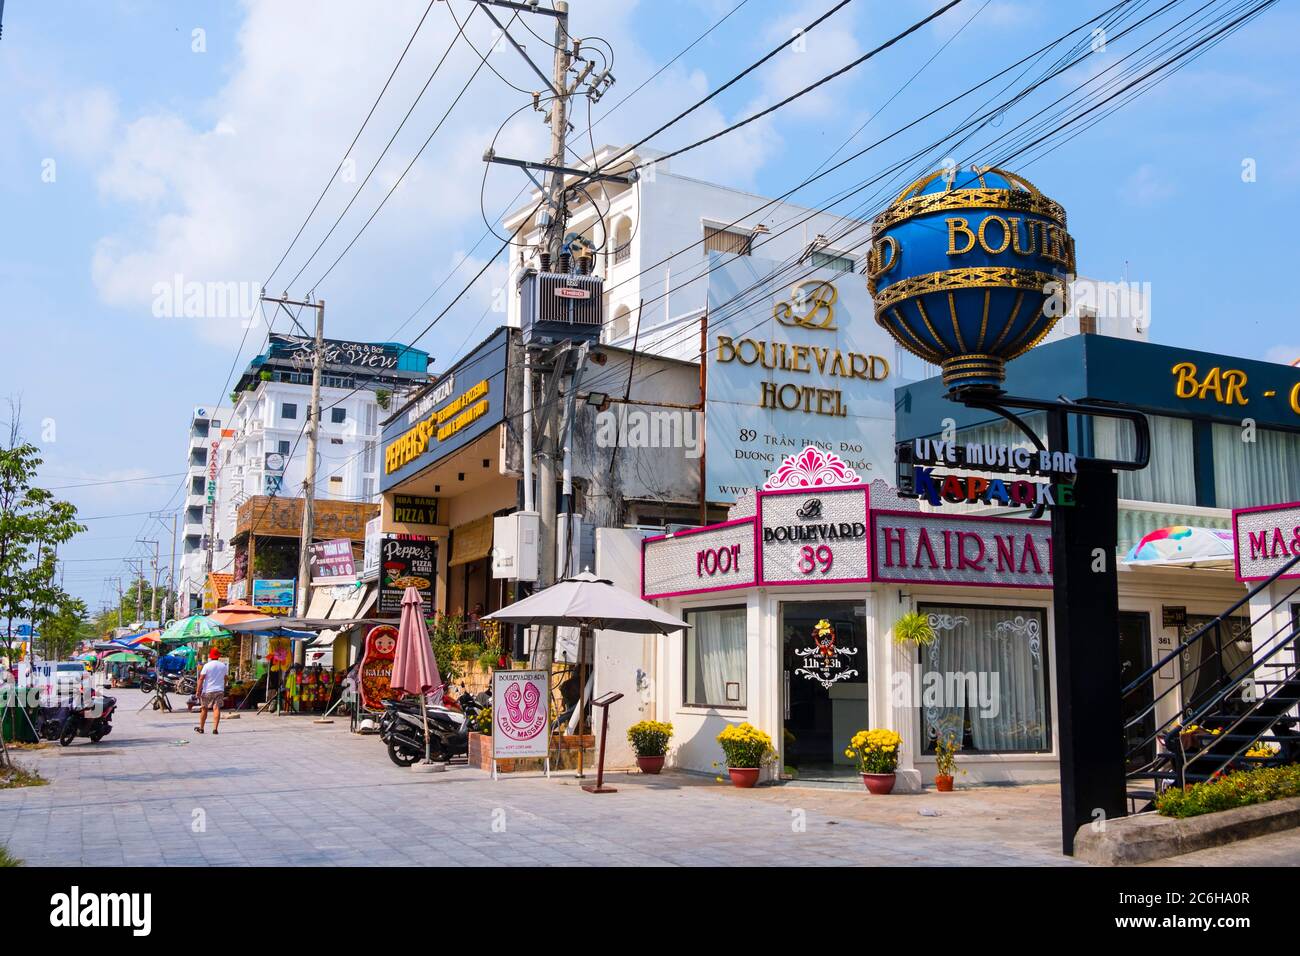 Duong Tran Hung Dao, main street, Duong Dong, Phu Quoc island, Vietnam, Asia Stock Photo